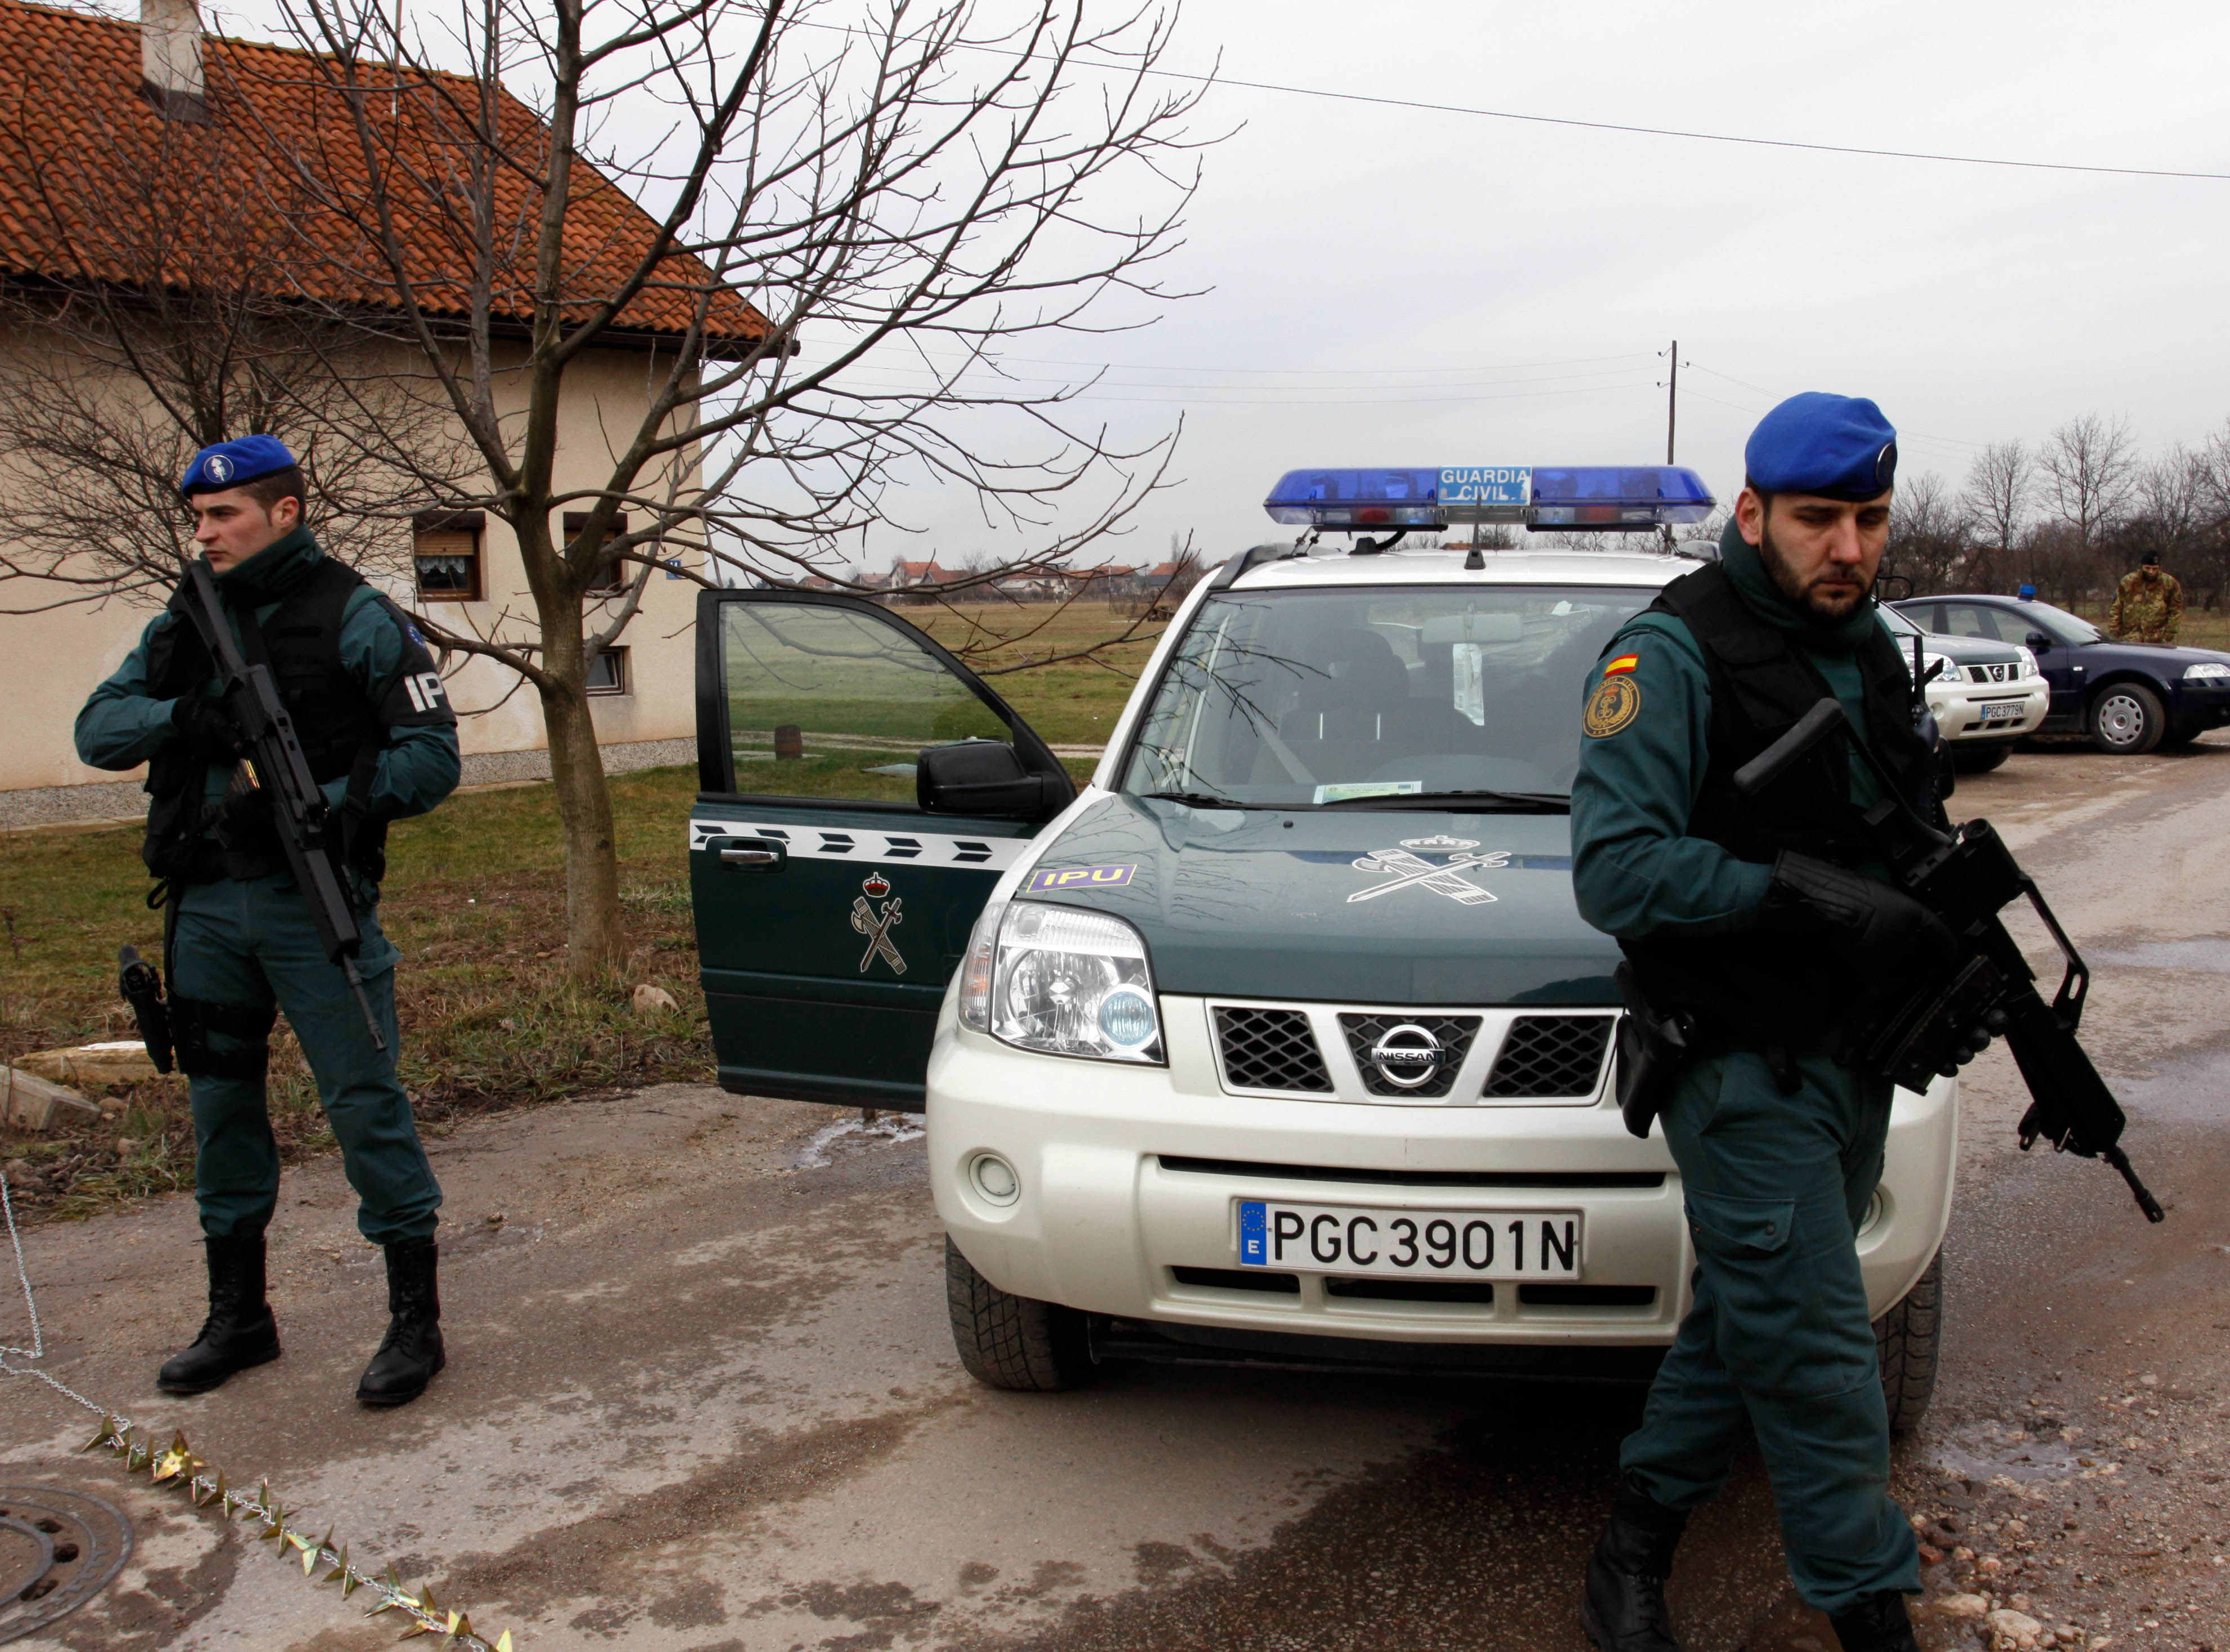 Βοσνία-Ερζεγοβίνη: Ολοκληρώνεται η αστυνομική αποστολή της ΕΕ